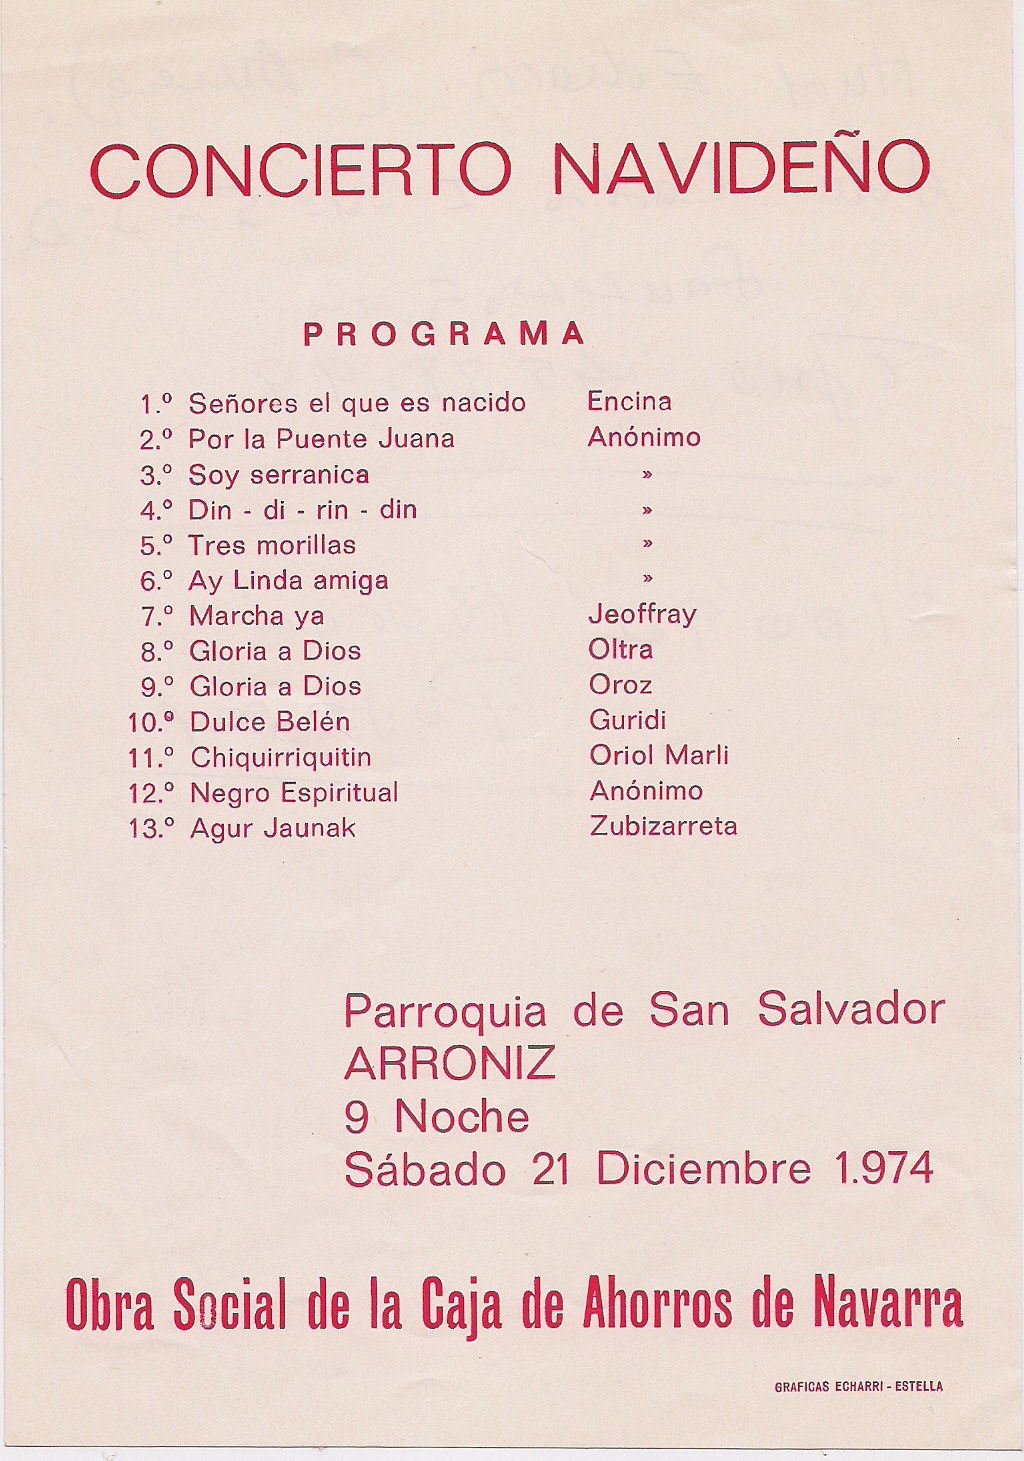 Año 1974. Arroniz. Programa